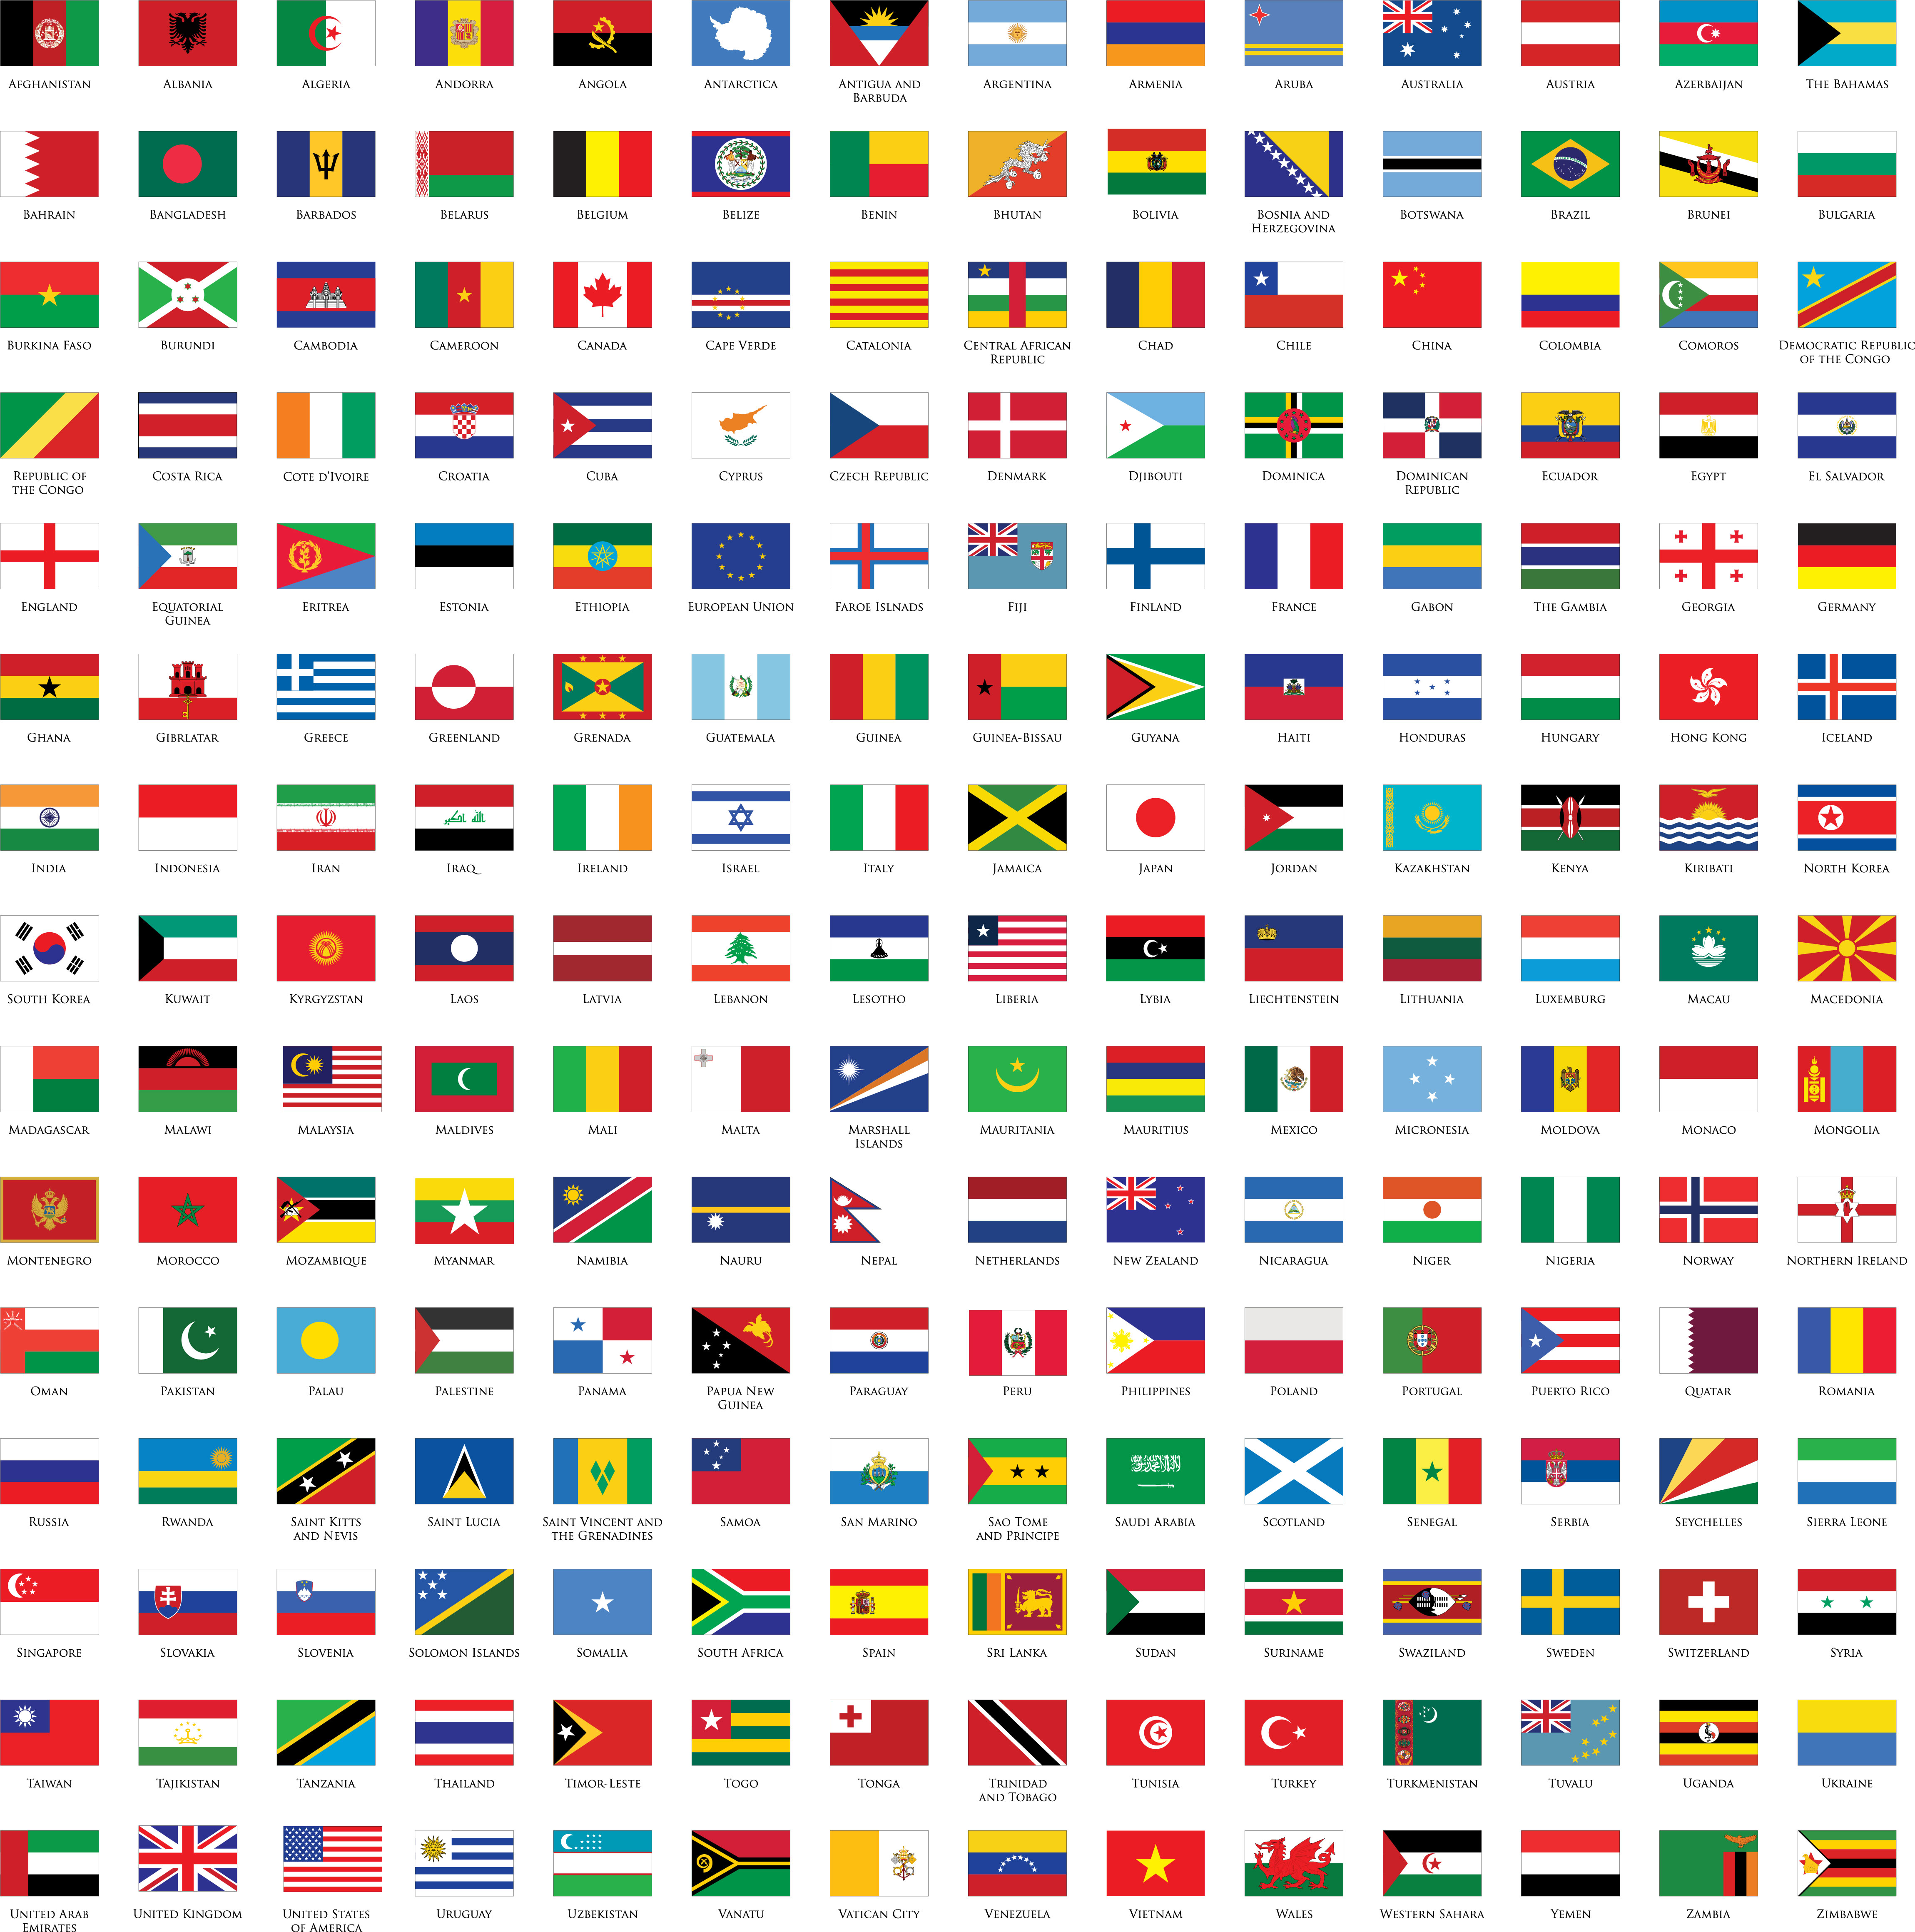 Cờ các nước - cờ quốc tế: Cờ các nước là biểu tượng văn hóa đặc trưng cho mỗi quốc gia trên thế giới. Các bạn yêu thích du lịch và khám phá nên không bỏ qua việc tìm hiểu về cờ quốc tế, những mẫu thiết kế độc đáo và mang ý nghĩa sâu xa. Cờ quốc tế còn là niềm tự hào của mỗi quốc gia và được trưng bày trong các hoạt động liên quốc gia.